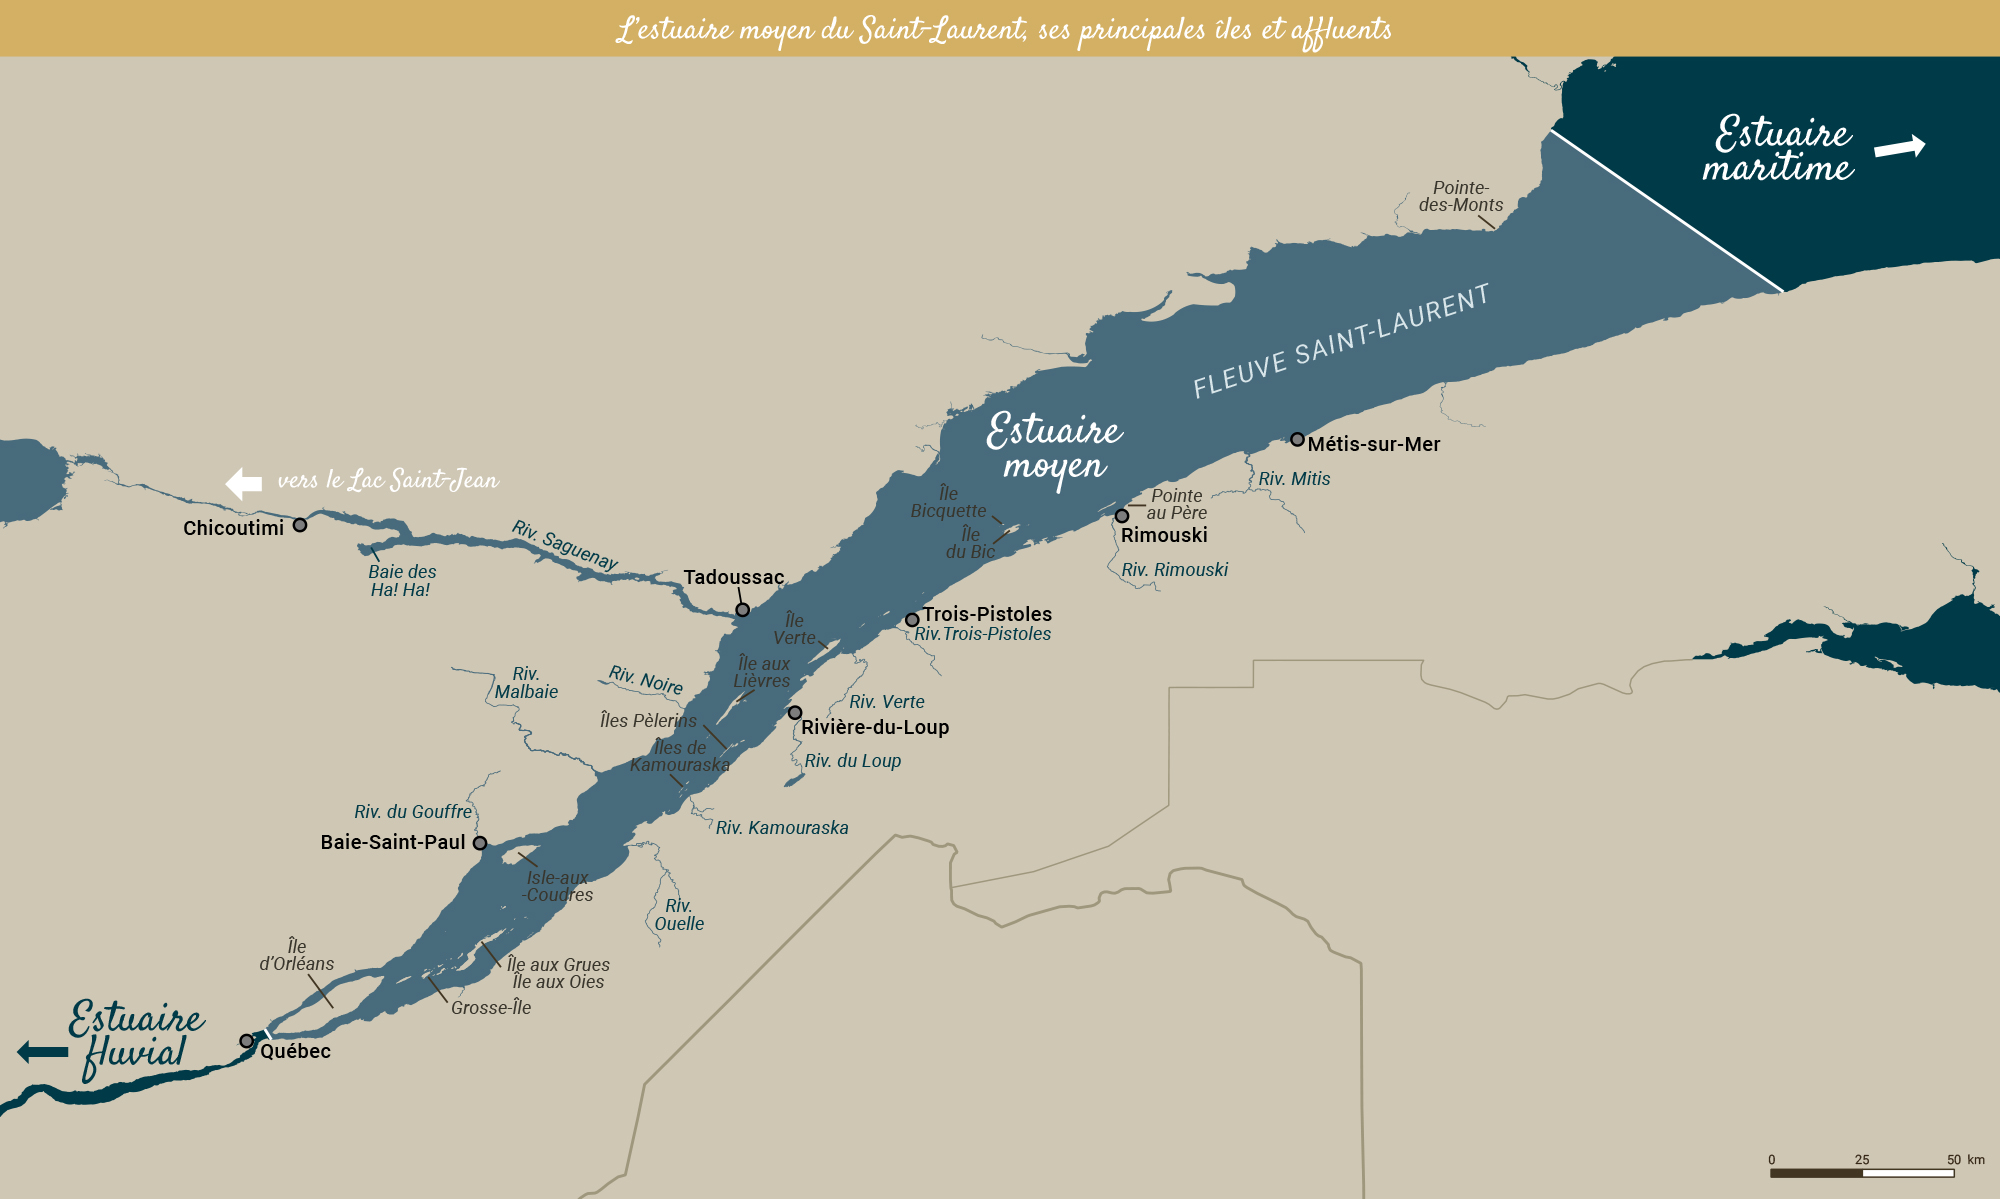 Carte géographique de l’estuaire du Saint-Laurent (estuaire fluvial, moyen et maritime), de ses affluents et principales îles.